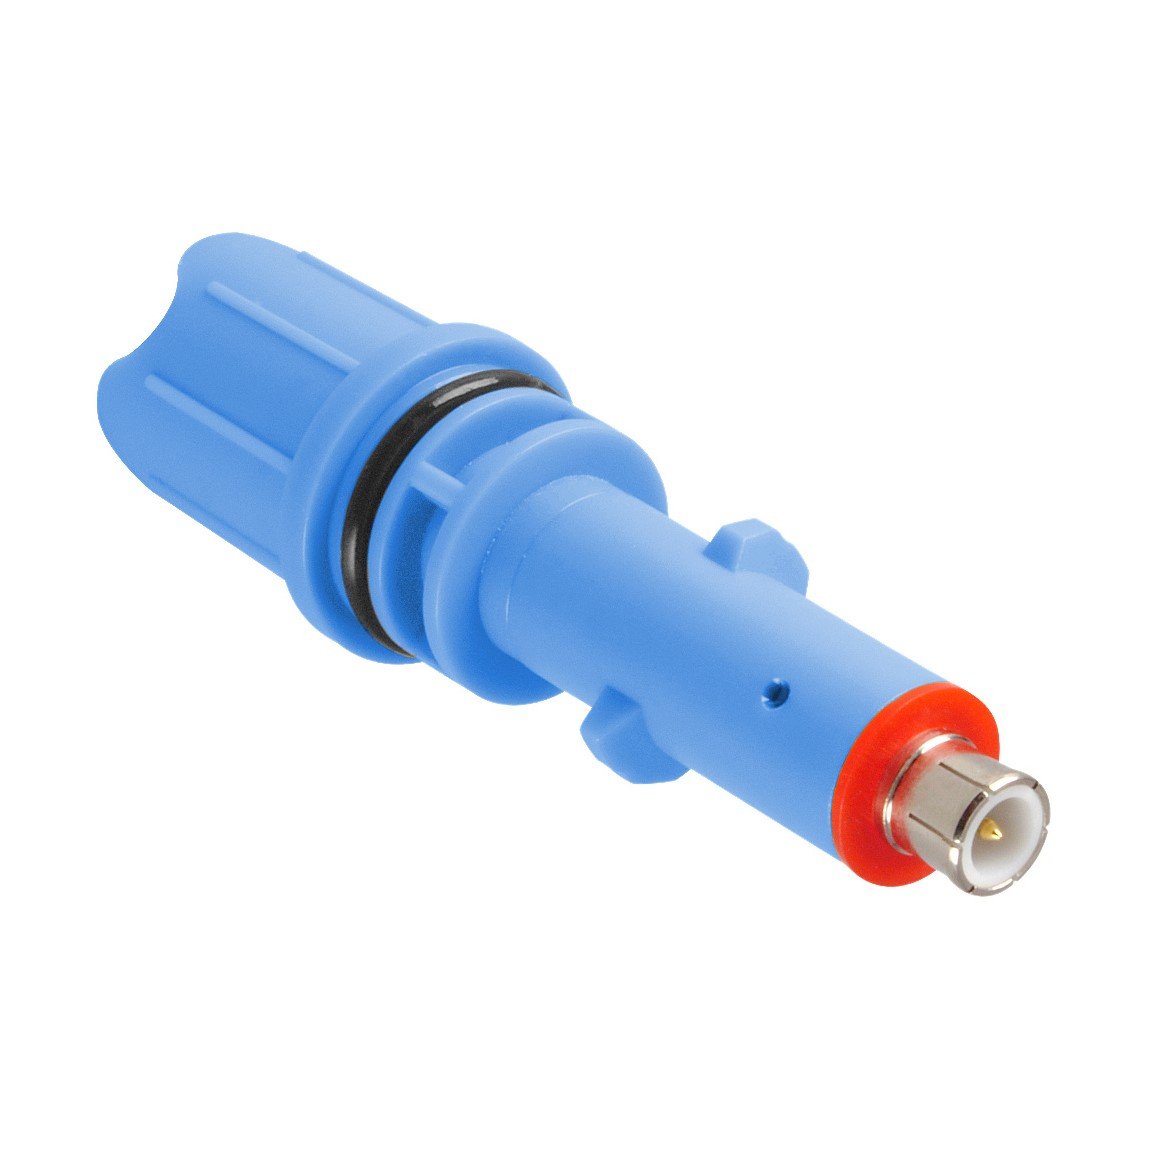 Sonde pH pour testeur numérique Ondilo ICO (bleu) - 1 